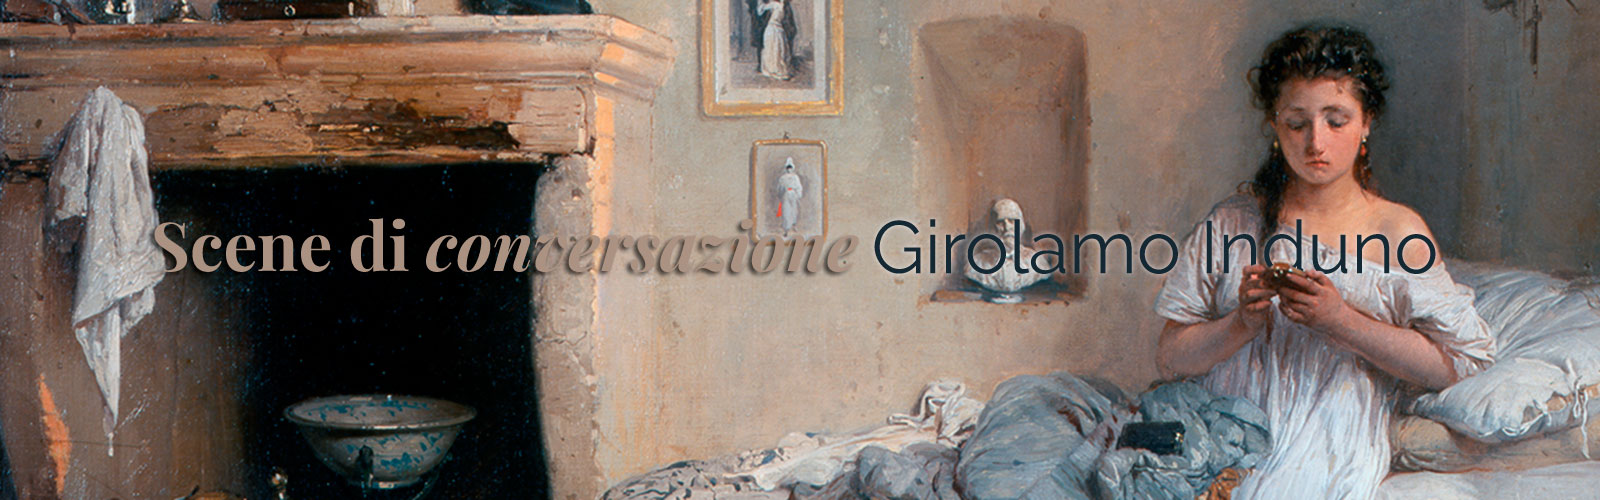 Scene di conversazione: Girolamo Induno, <em>Triste presentimento</em>